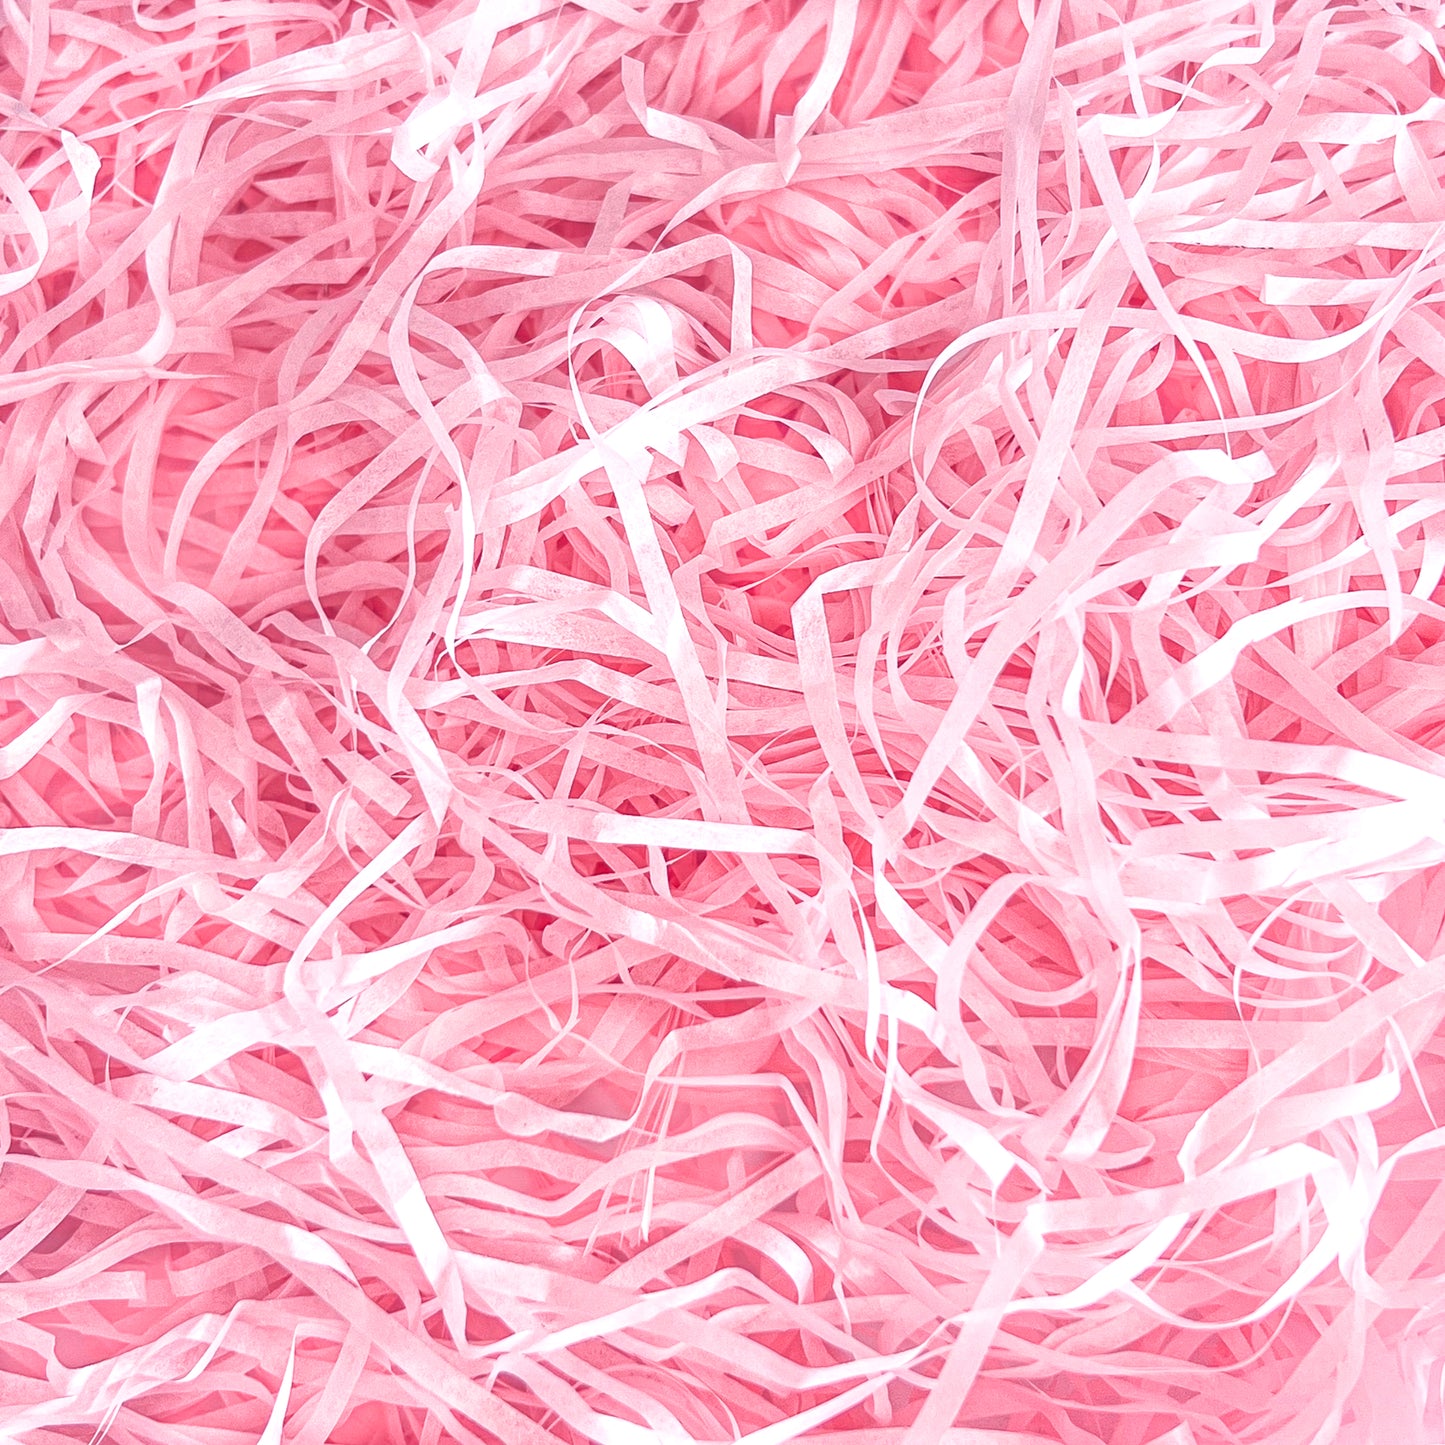 Light Pink Shredded Tissue Paper